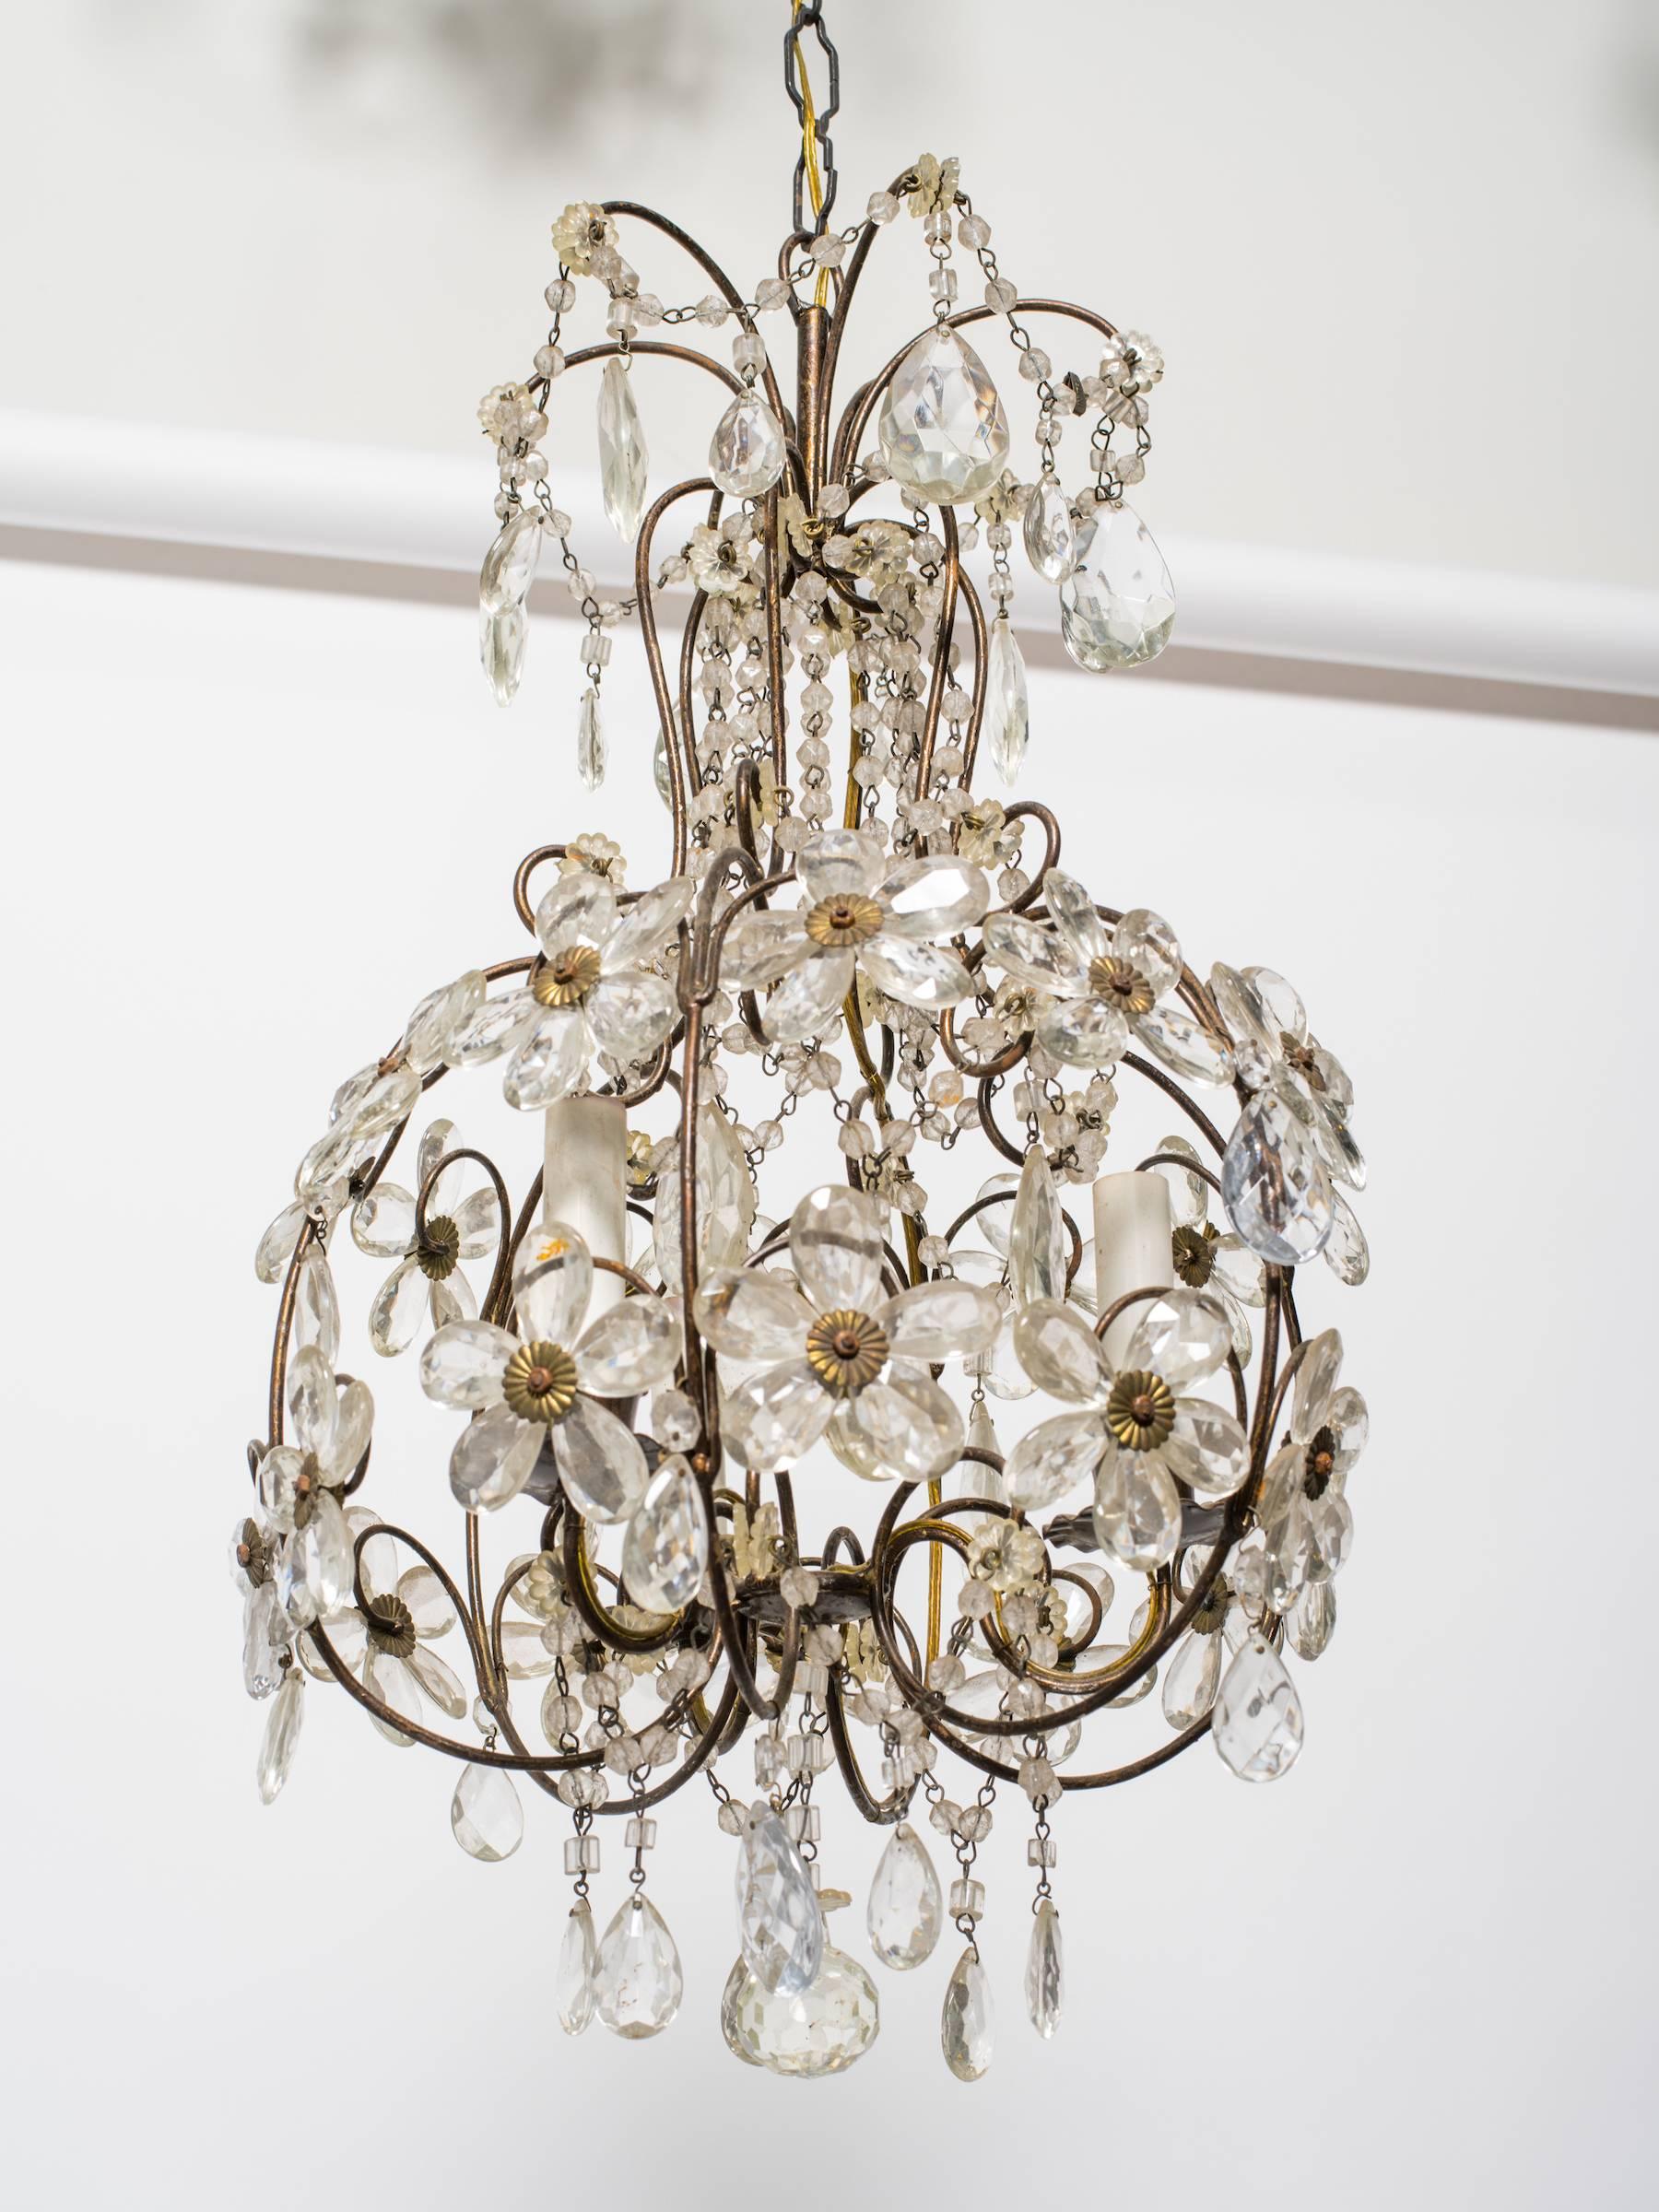 1960s chandeliers